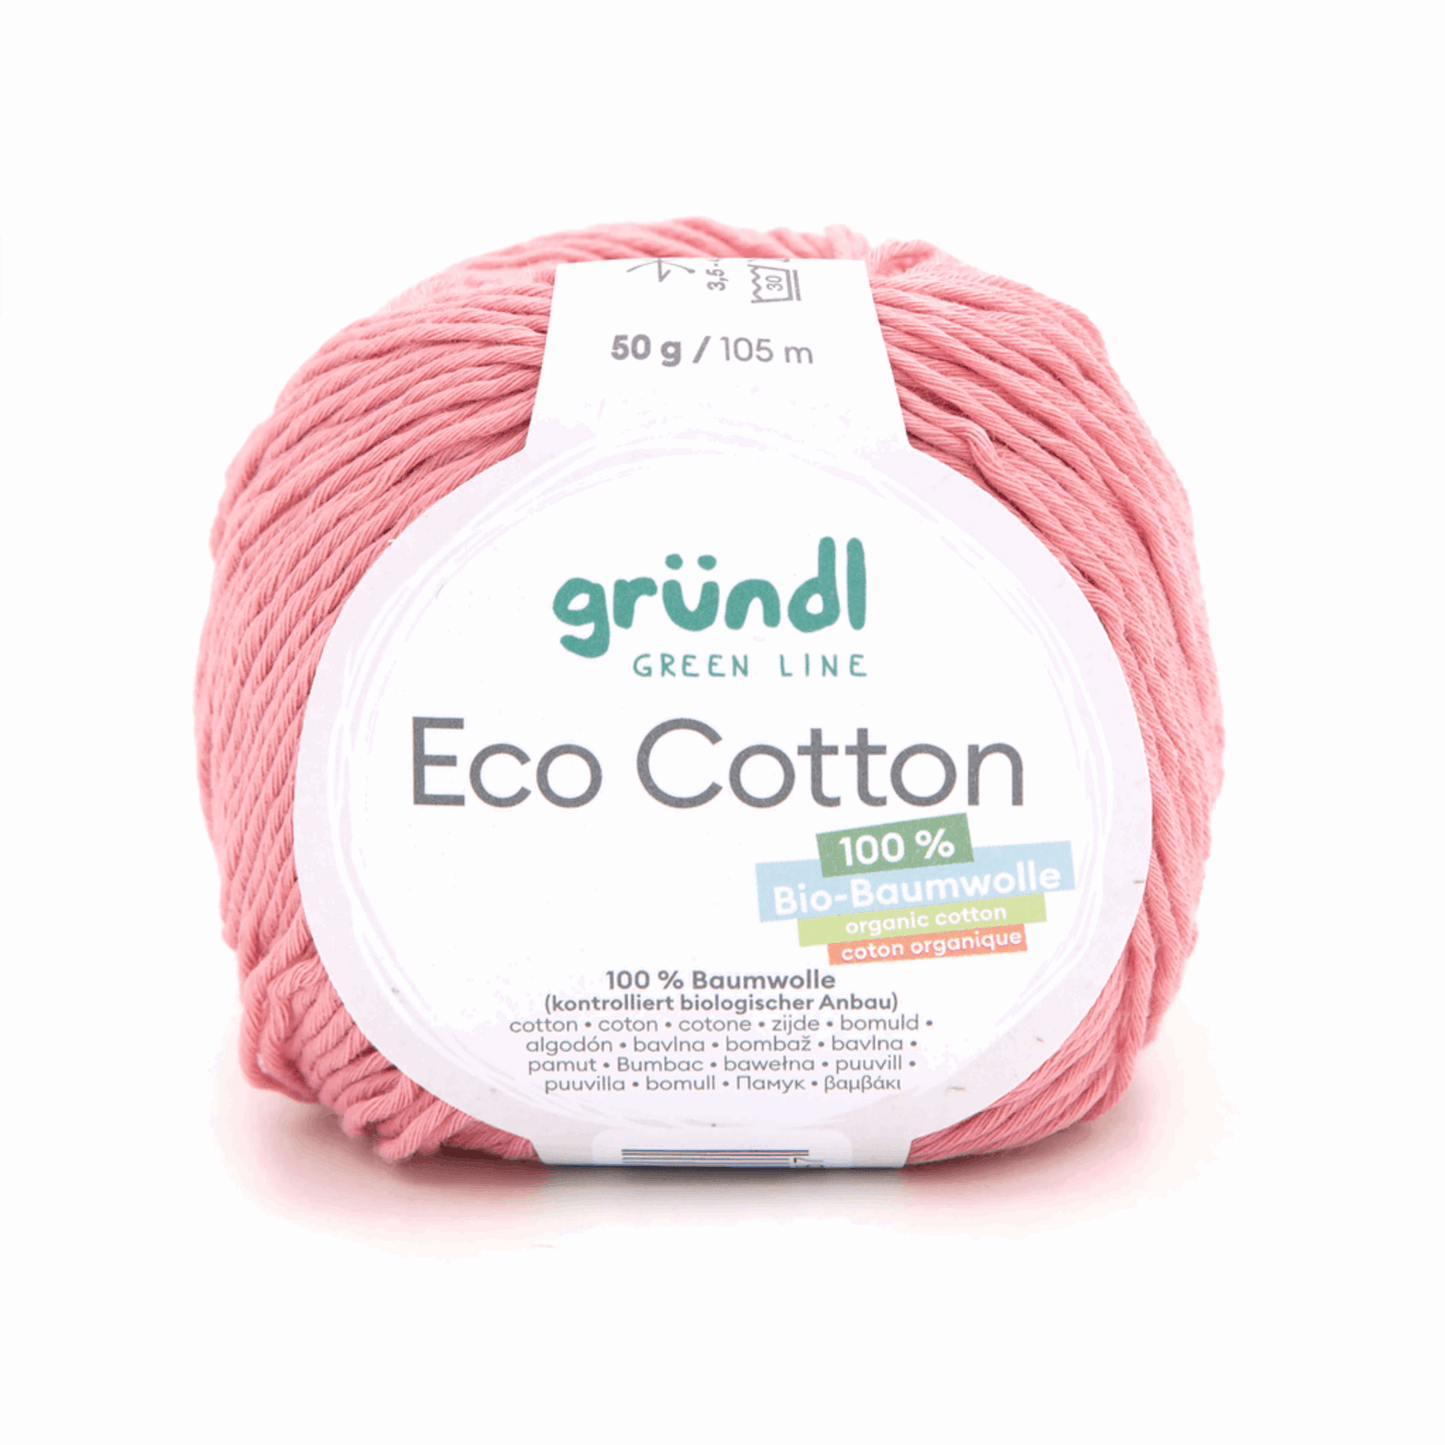 Gründl Eco Cotton, Farbe 5 rosa